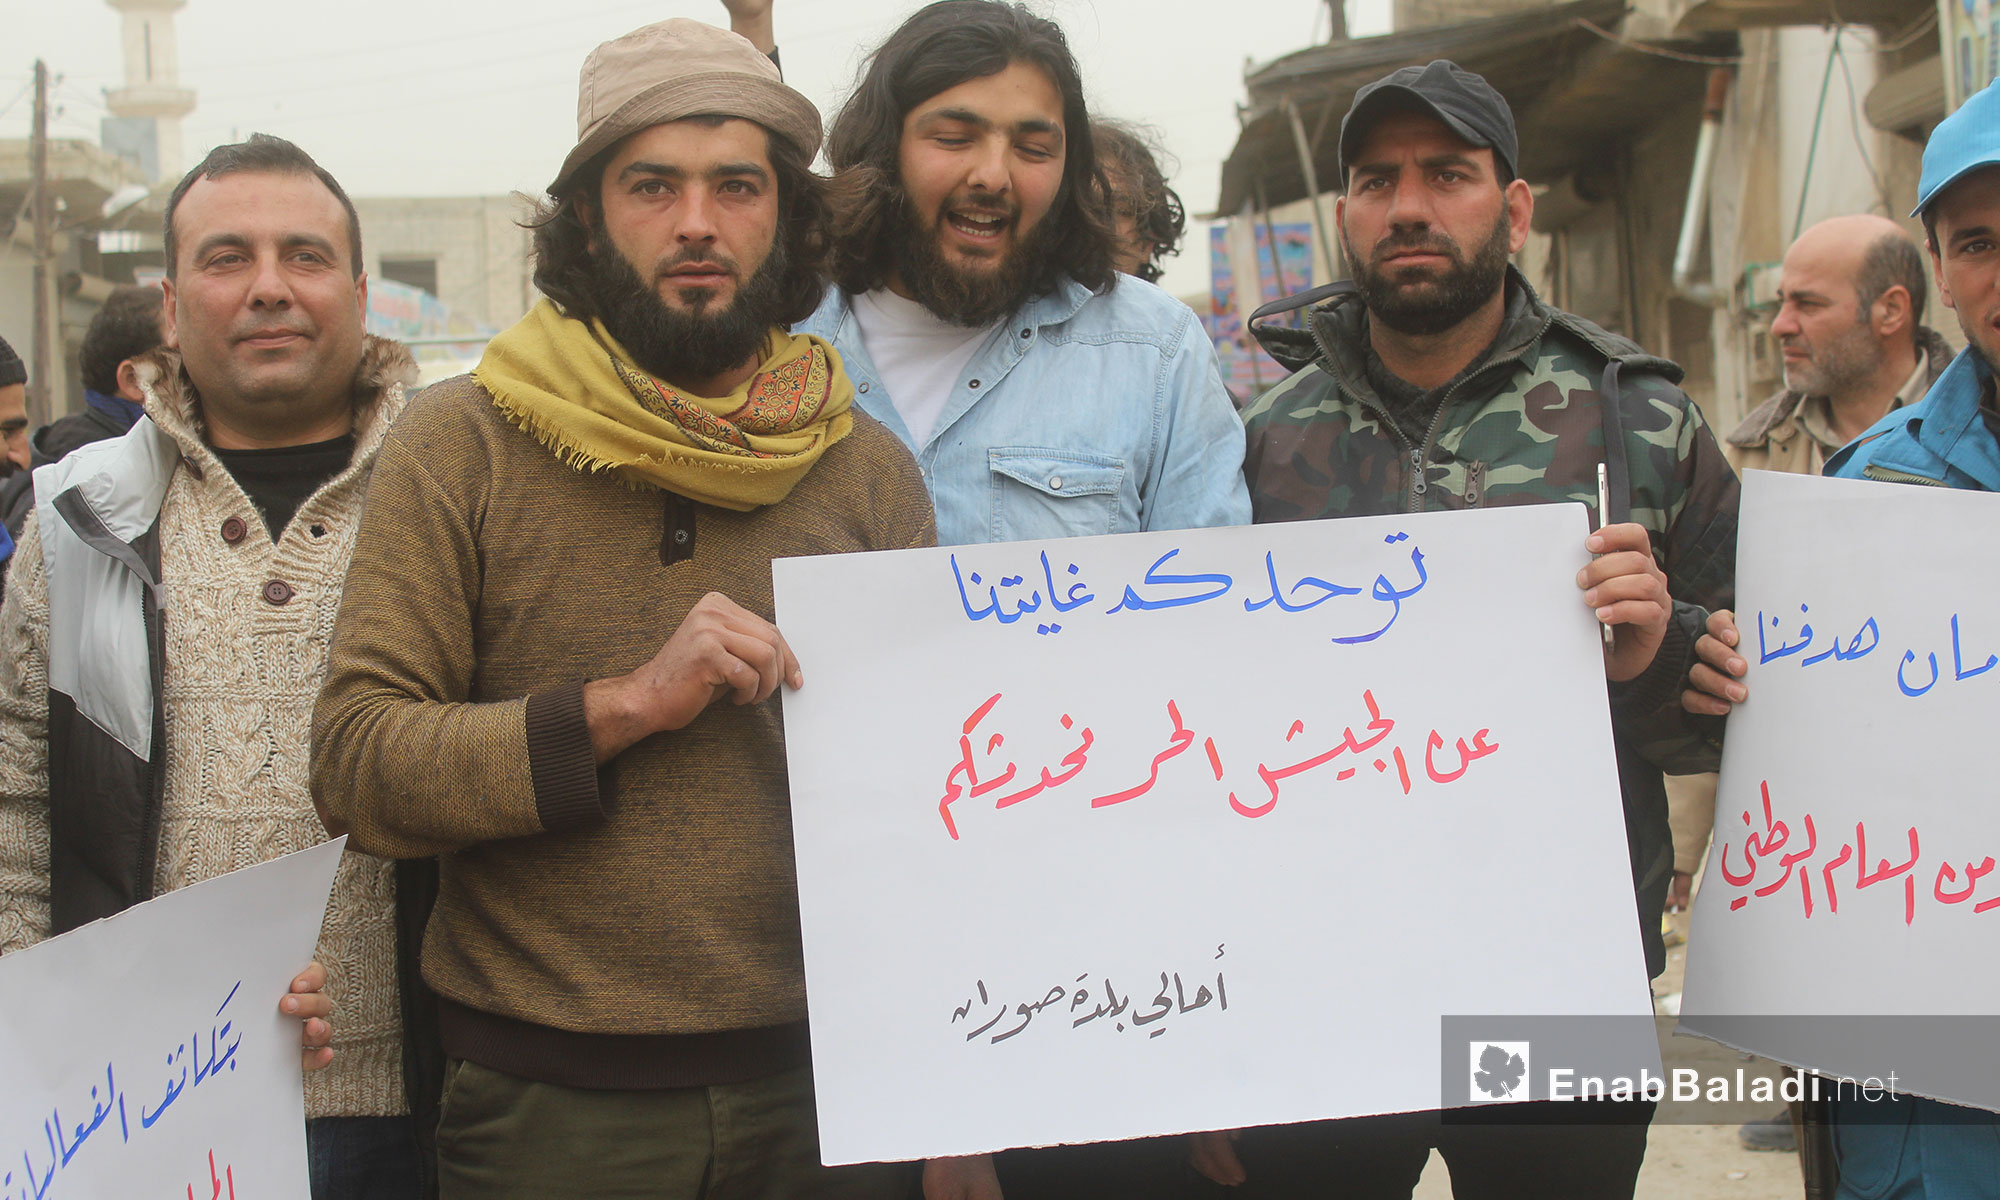 مظاهرة تدعم الشرطة الحرة والعمل المؤسساتي في صوران بريف حلب - 10 آذار 2017 (عنب بلدي)